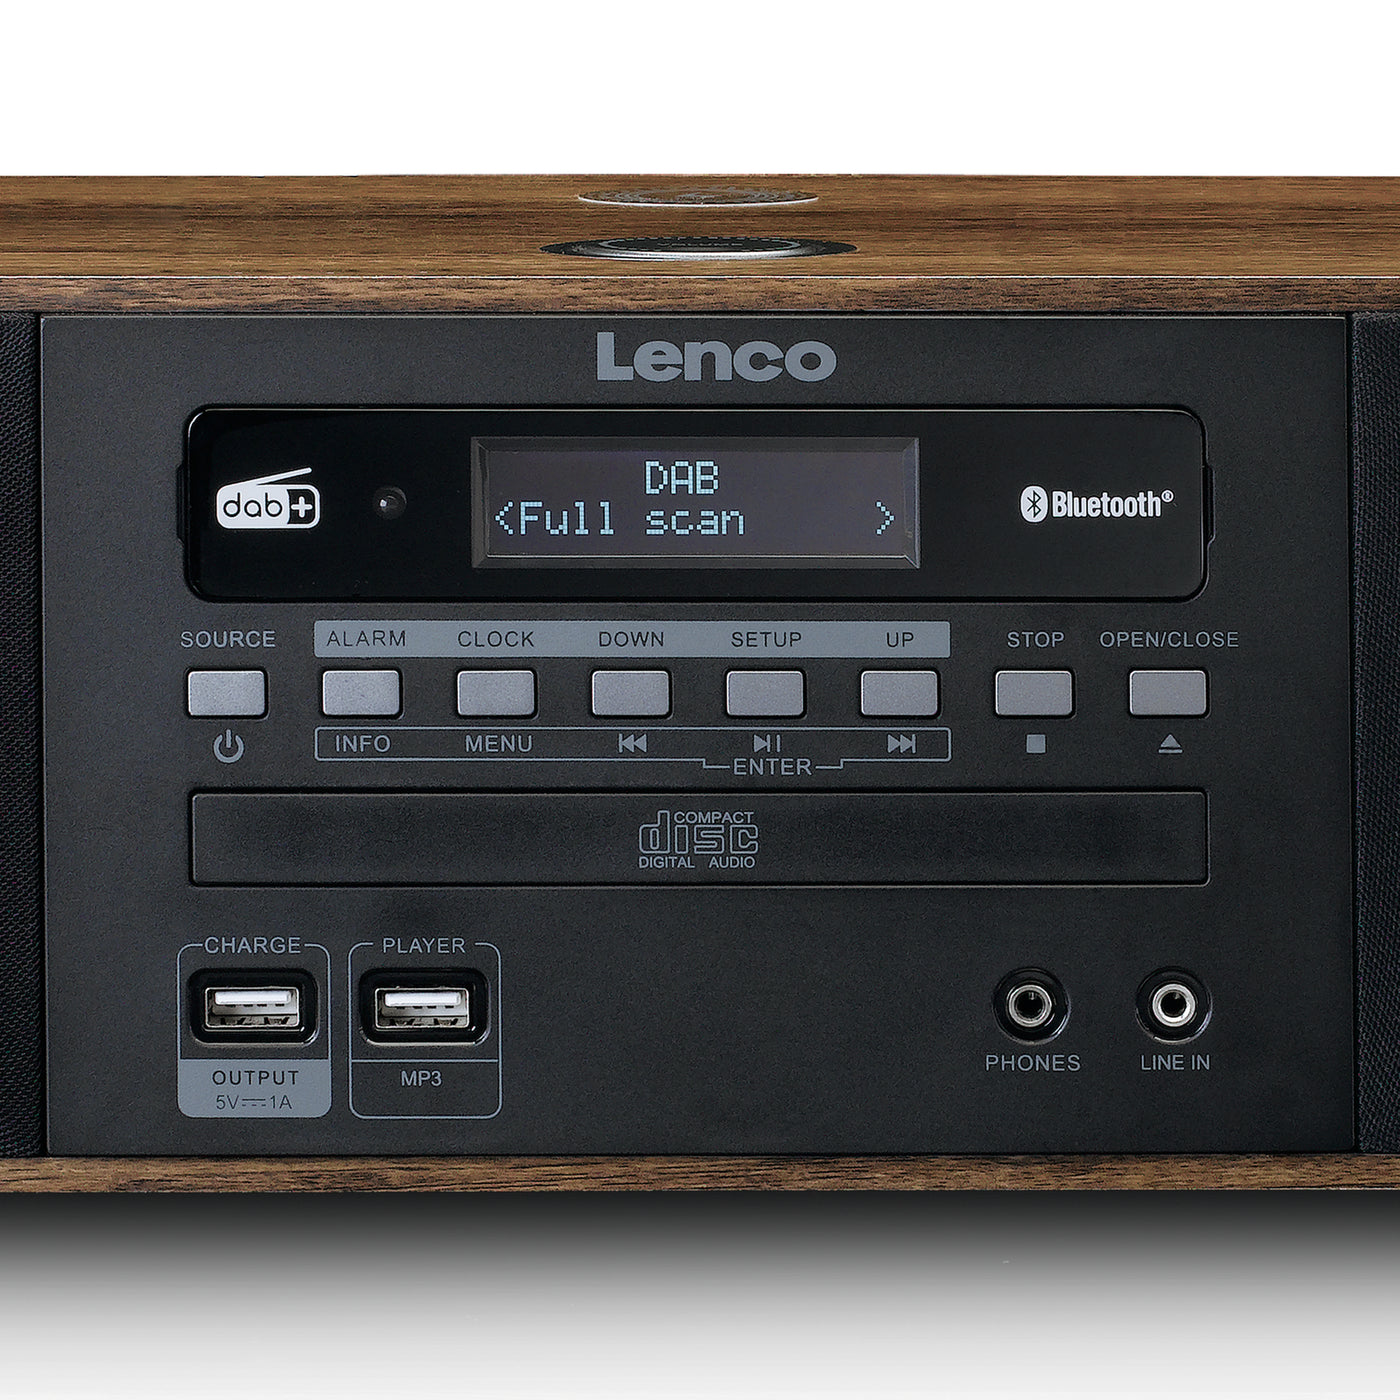 LENCO DAR-051WD Lenco-Catalog - CD, Bluetooth®, 2 USB, QI DAB+/ Stereo – and FM radio